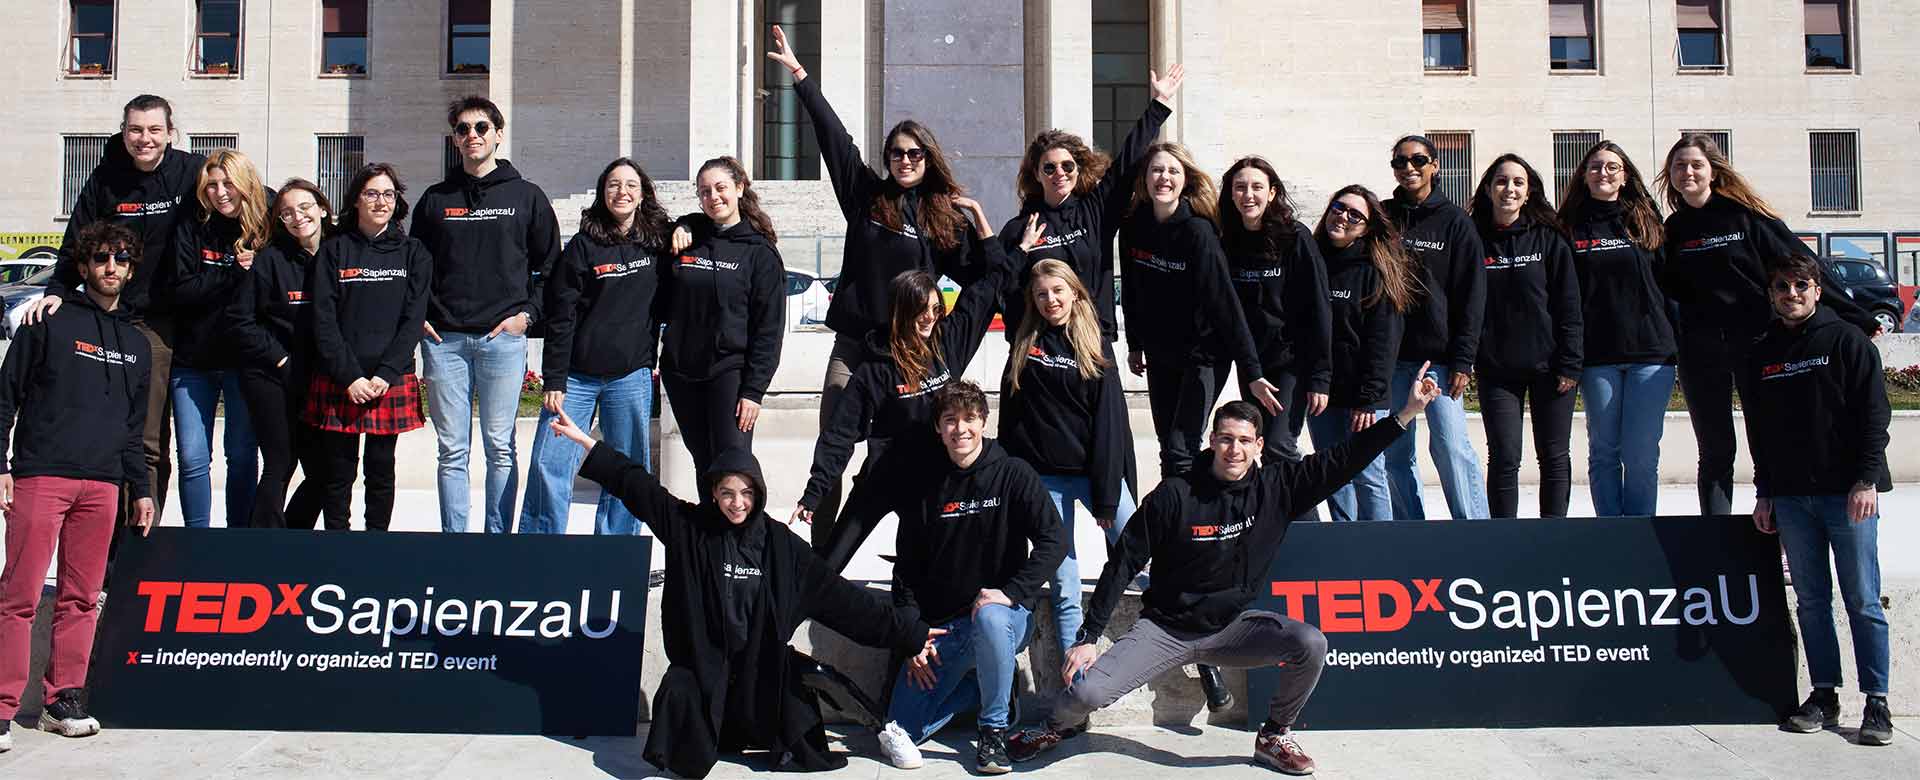 Il team organizzatore e i volontari di TEDxSapienzaU